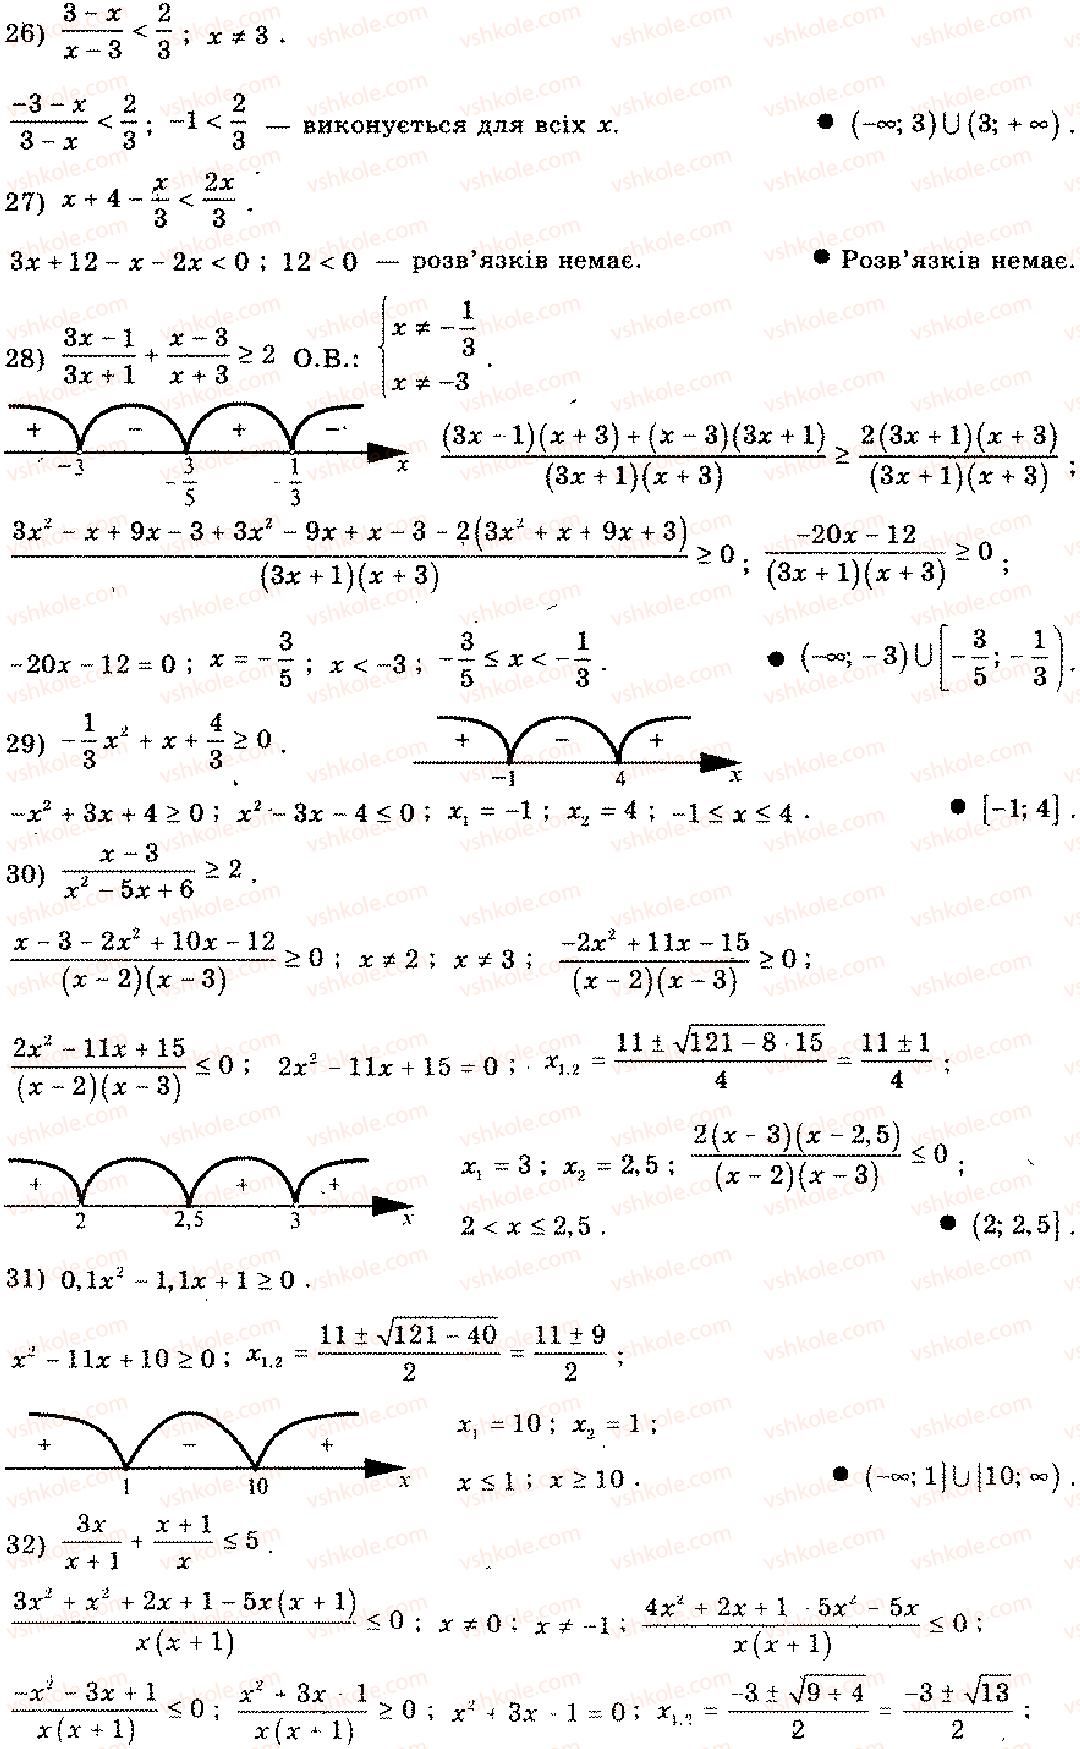 11-algebra-mi-shkil-zi-slepkan-os-dubinchuk-2006--rozdil-15-povtorennya-kursu-algebri-osnovnoyi-shkoli-4-3-rnd6665.jpg